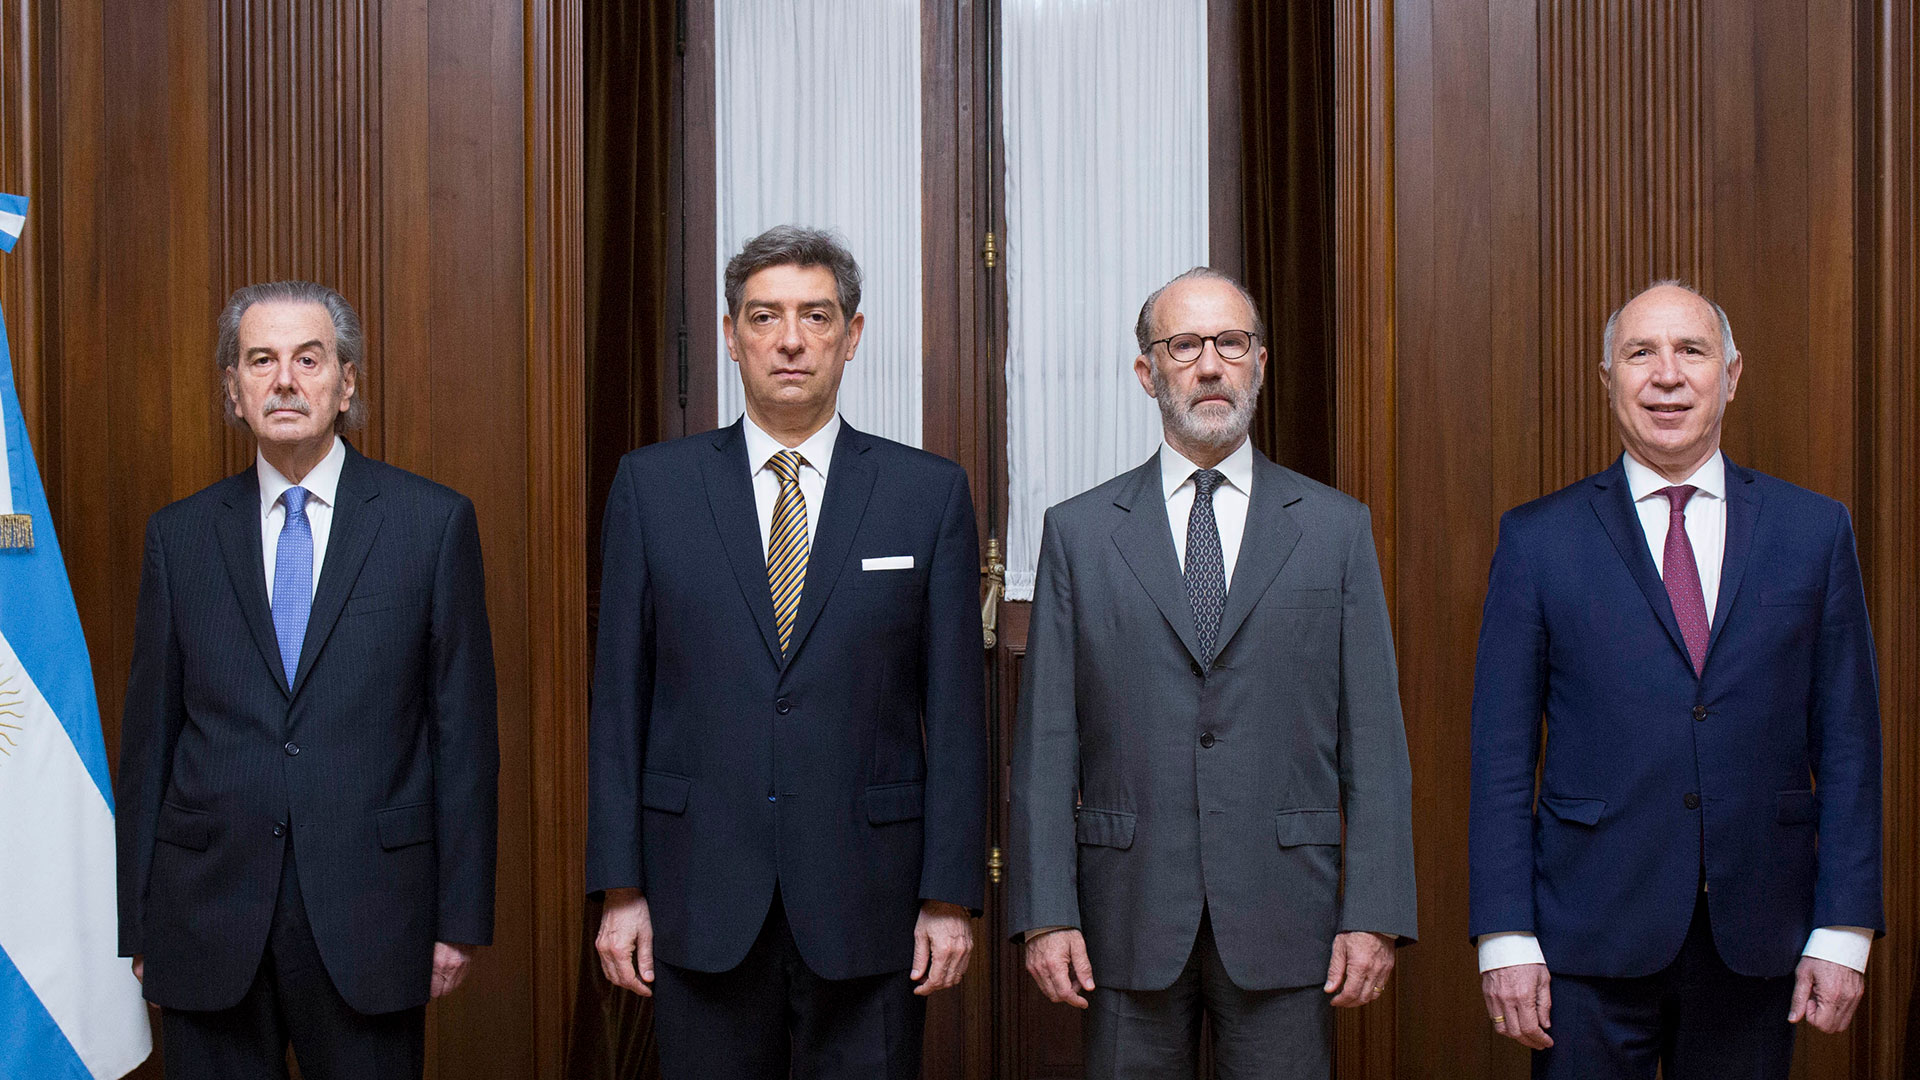 Los cuatro miembros de la Corte Suprema: Horacio Rosatti (presidente) Carlos Rozenkrantz (vicepresidente), Juan Carlos Maqueda y Ricardo Lorenzetti